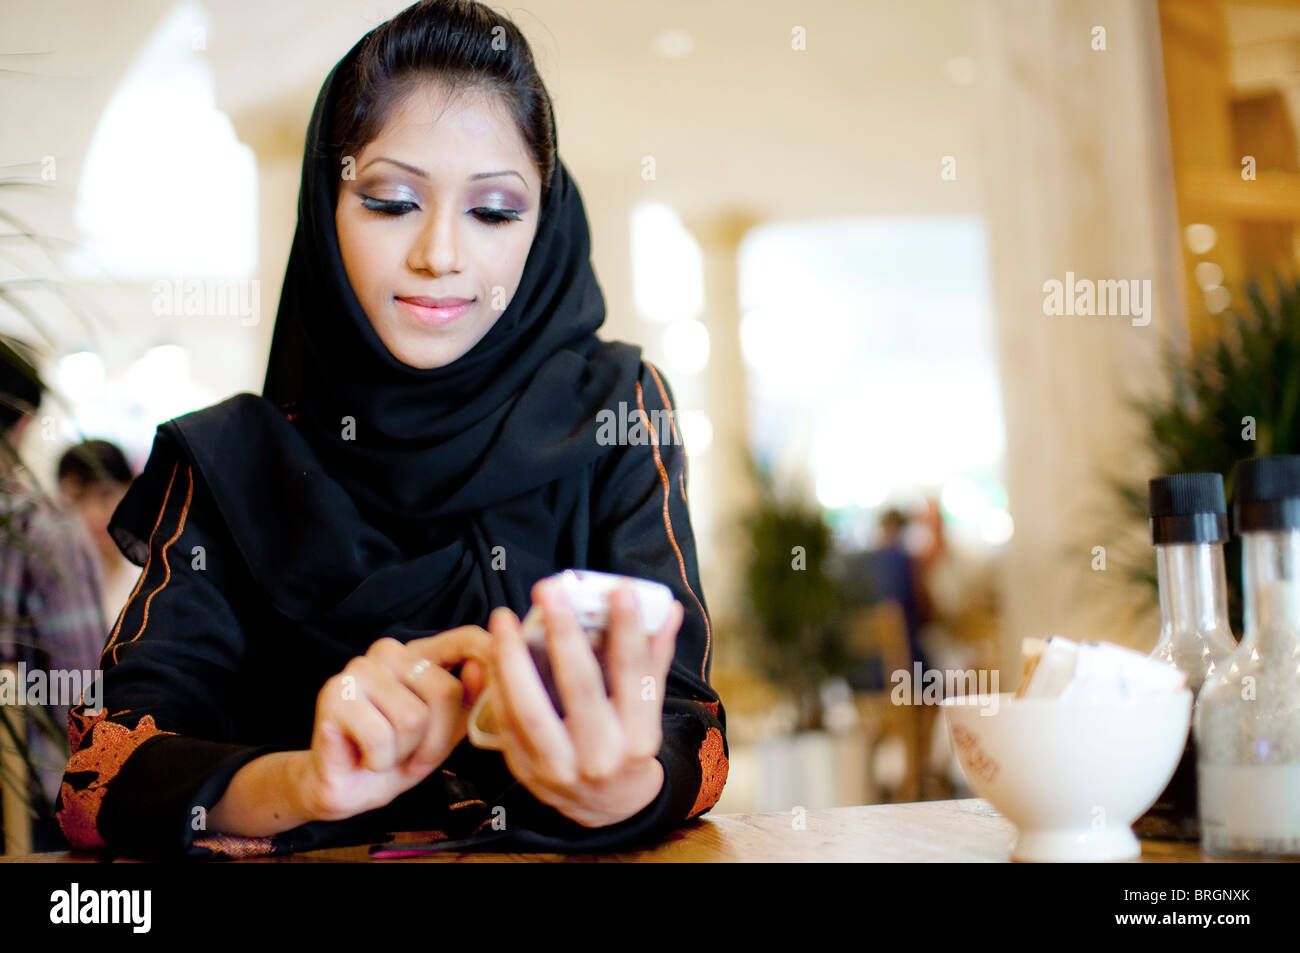 La joven moderna y rica liberó a la mujer árabe usando un burka aplicación móvil o mensajes de texto o registro en café brillante tienda Foto de stock